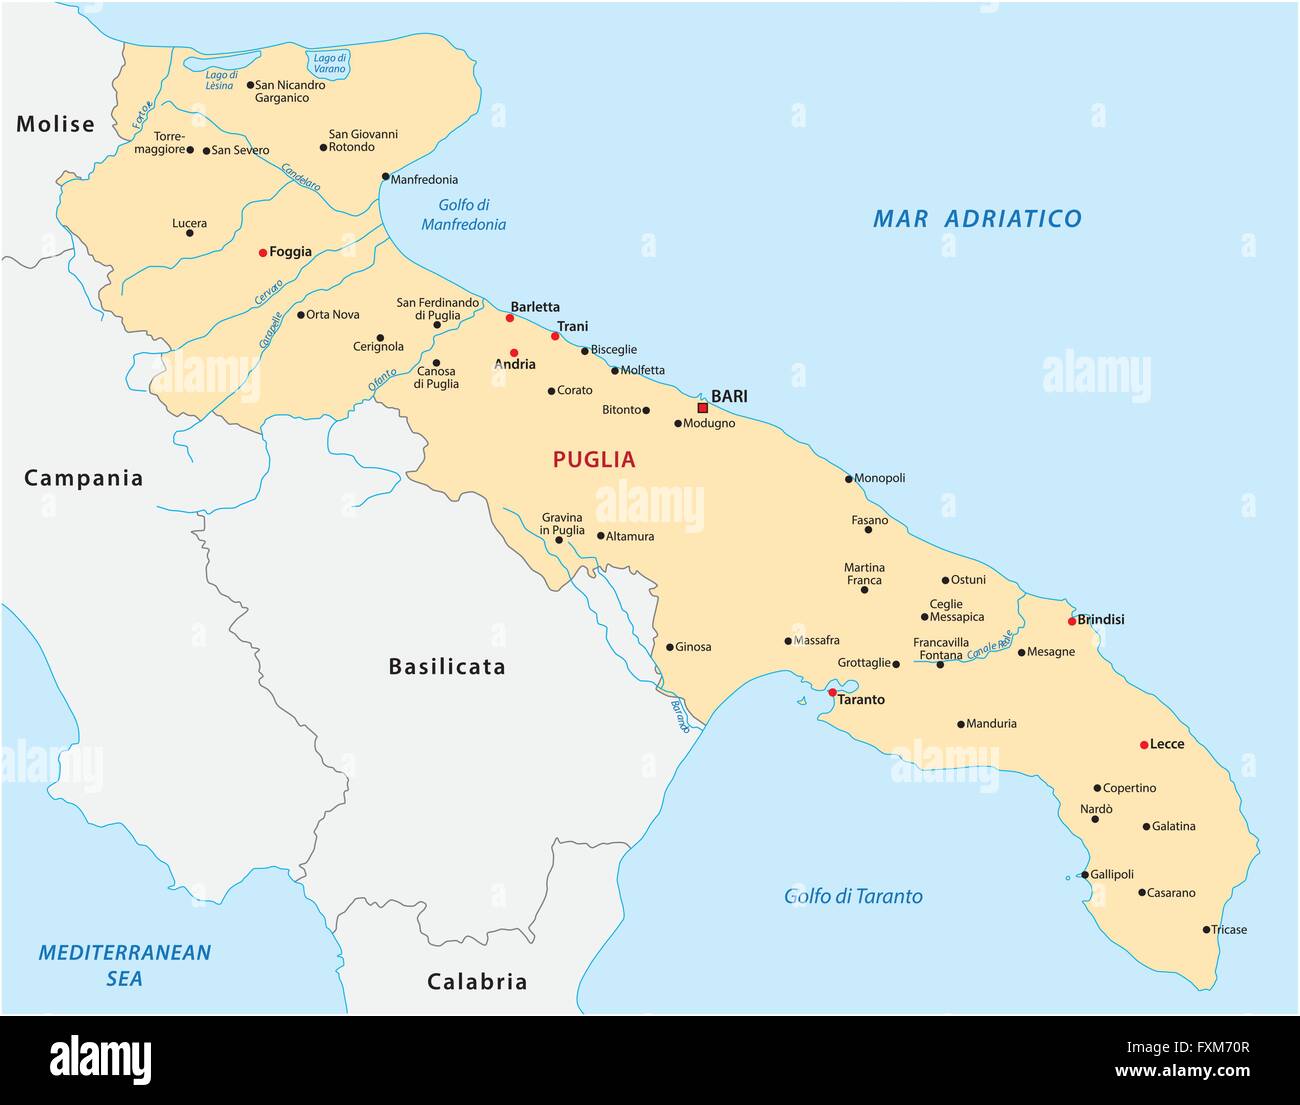 Mappa Della Regione Puglia Immagini E Fotos Stock Alamy